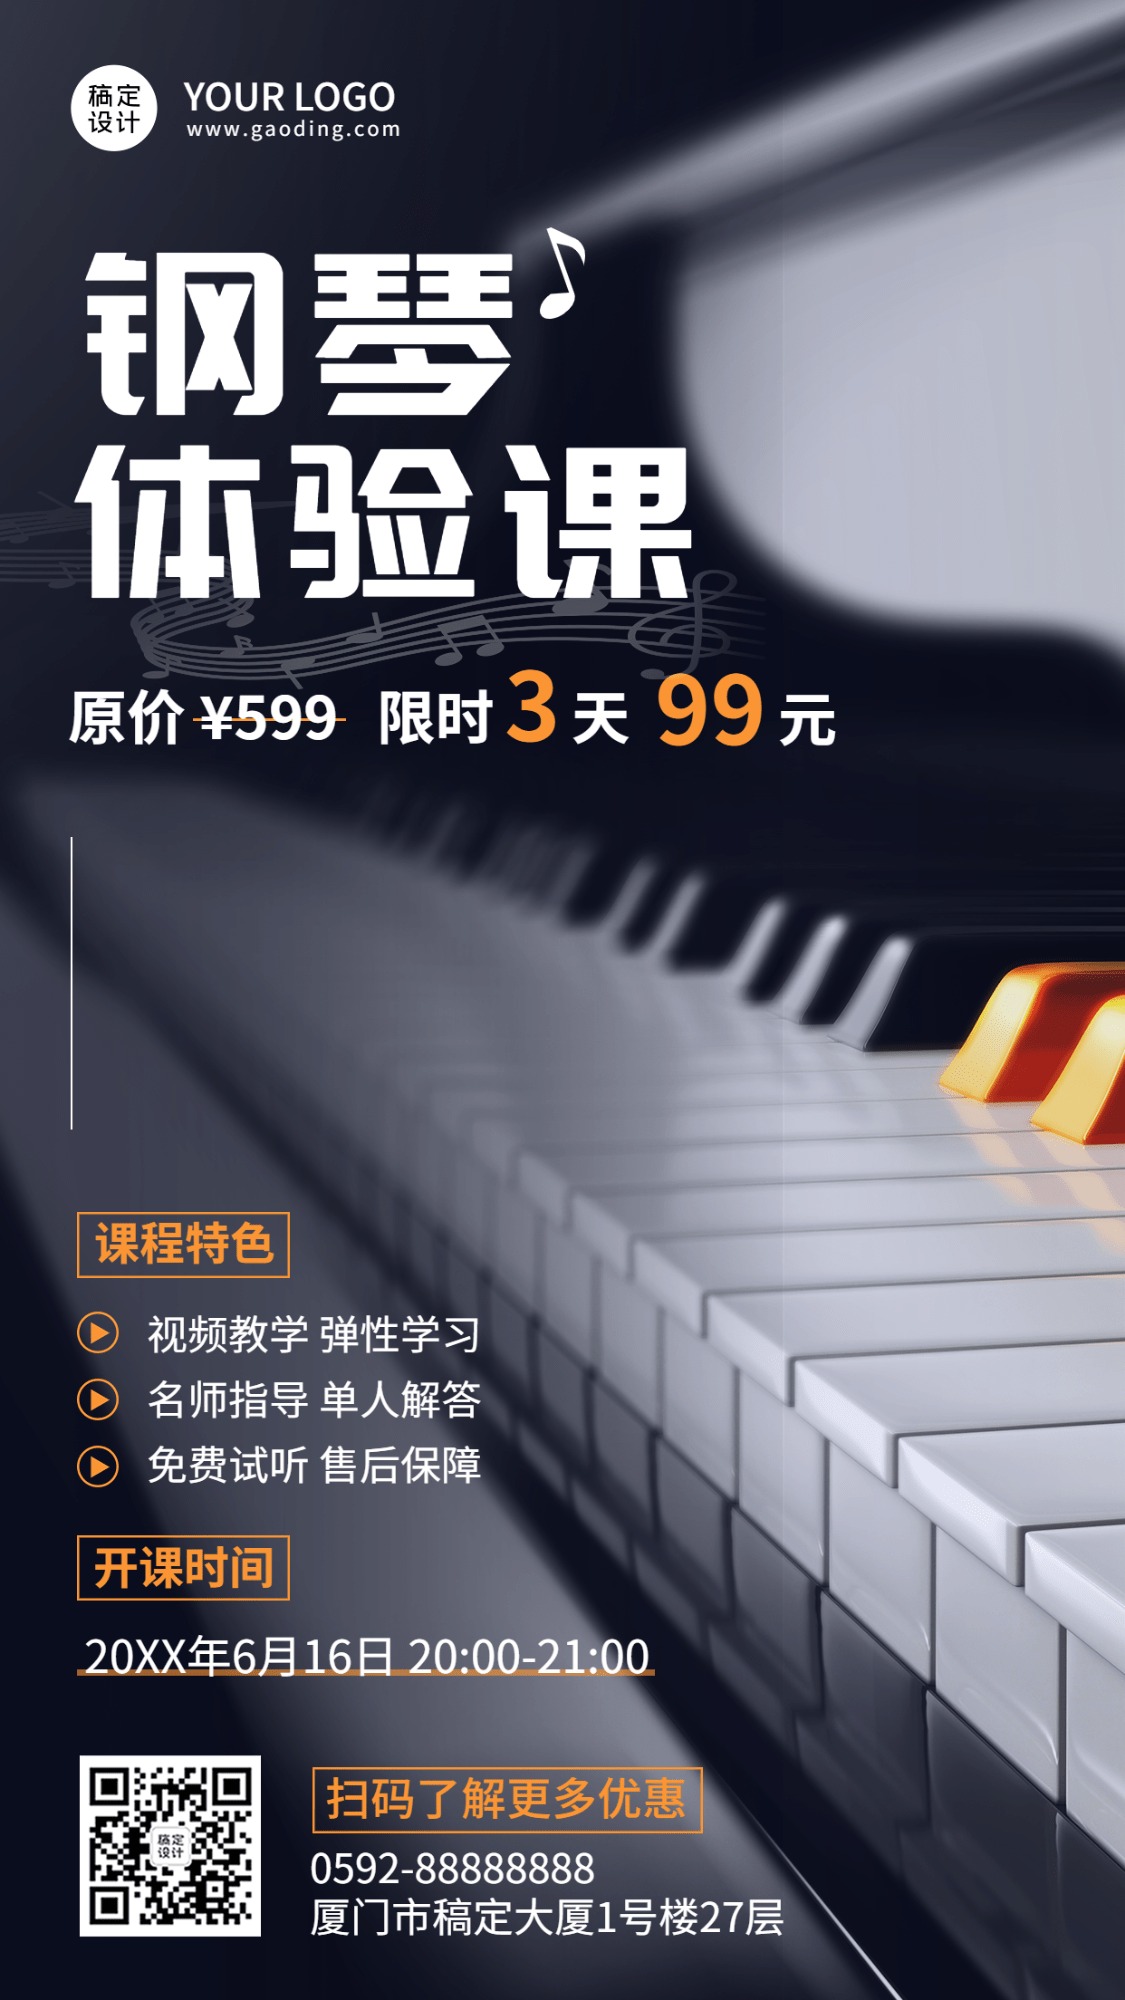 钢琴兴趣培训班招生体验课拓客引流排版手机海报预览效果